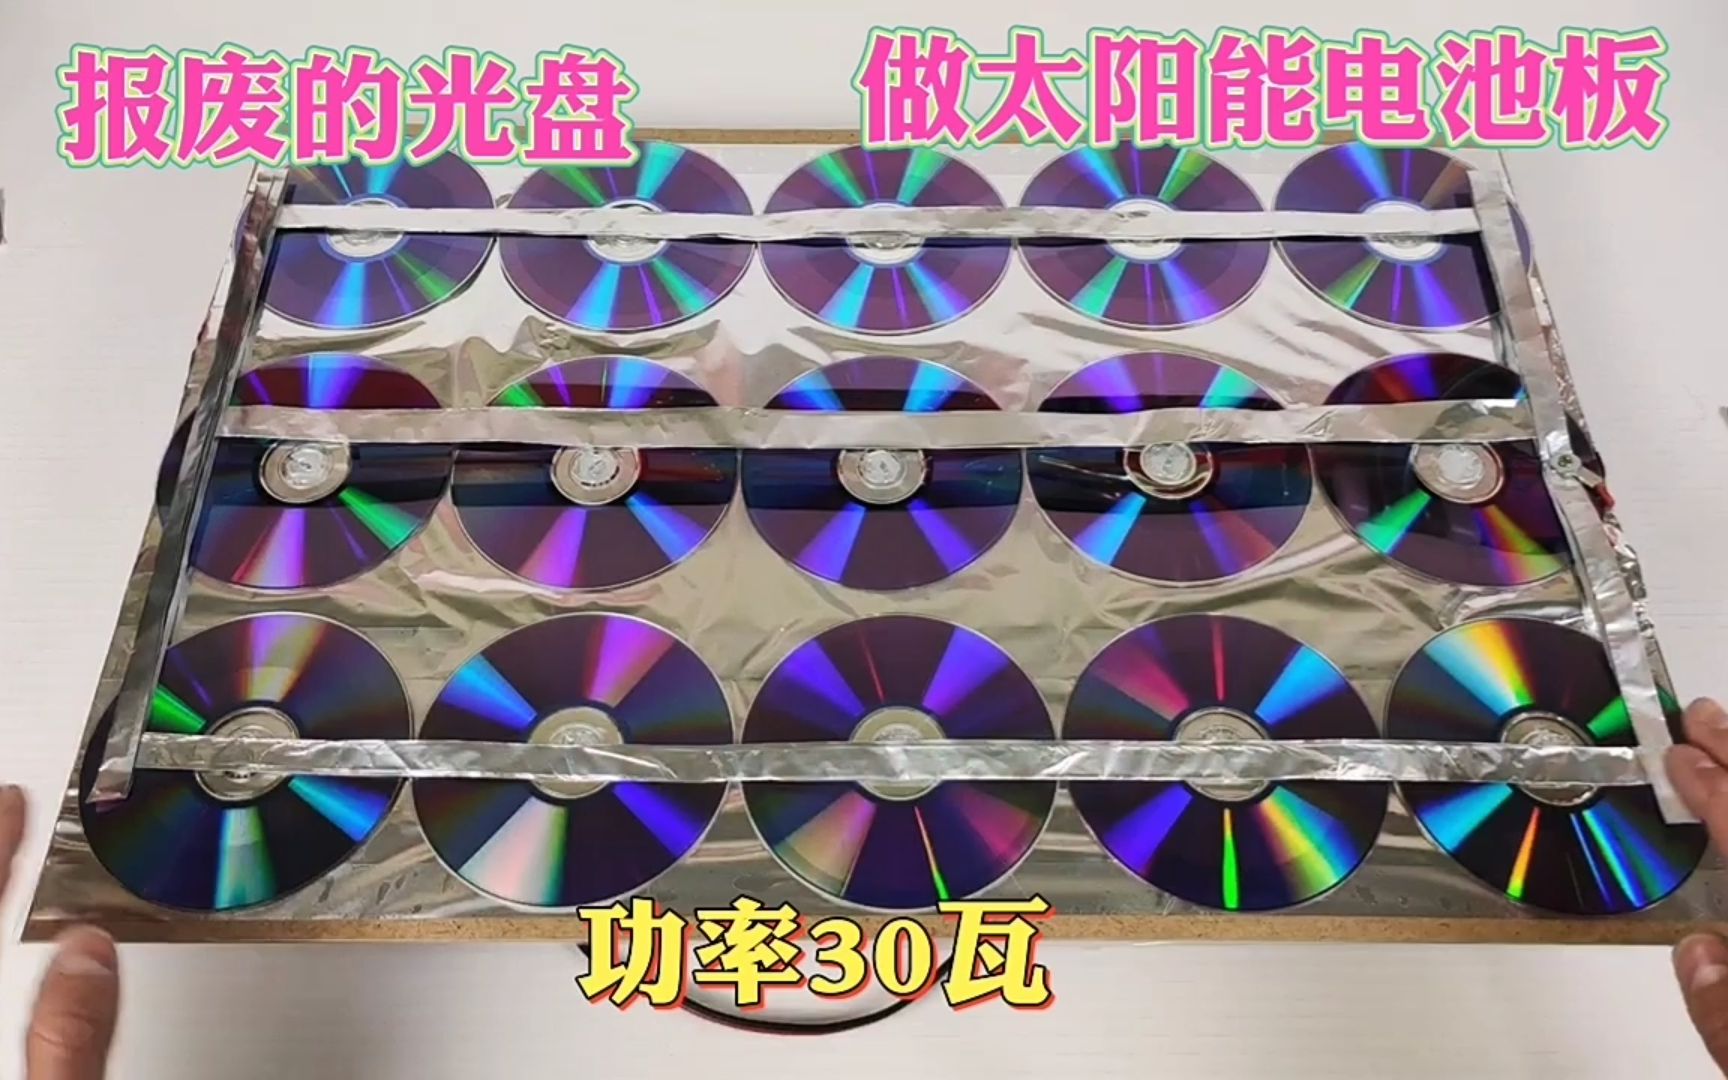 教你用报废的CD光盘自制太阳能电池板，输出功率30瓦，成本几块钱